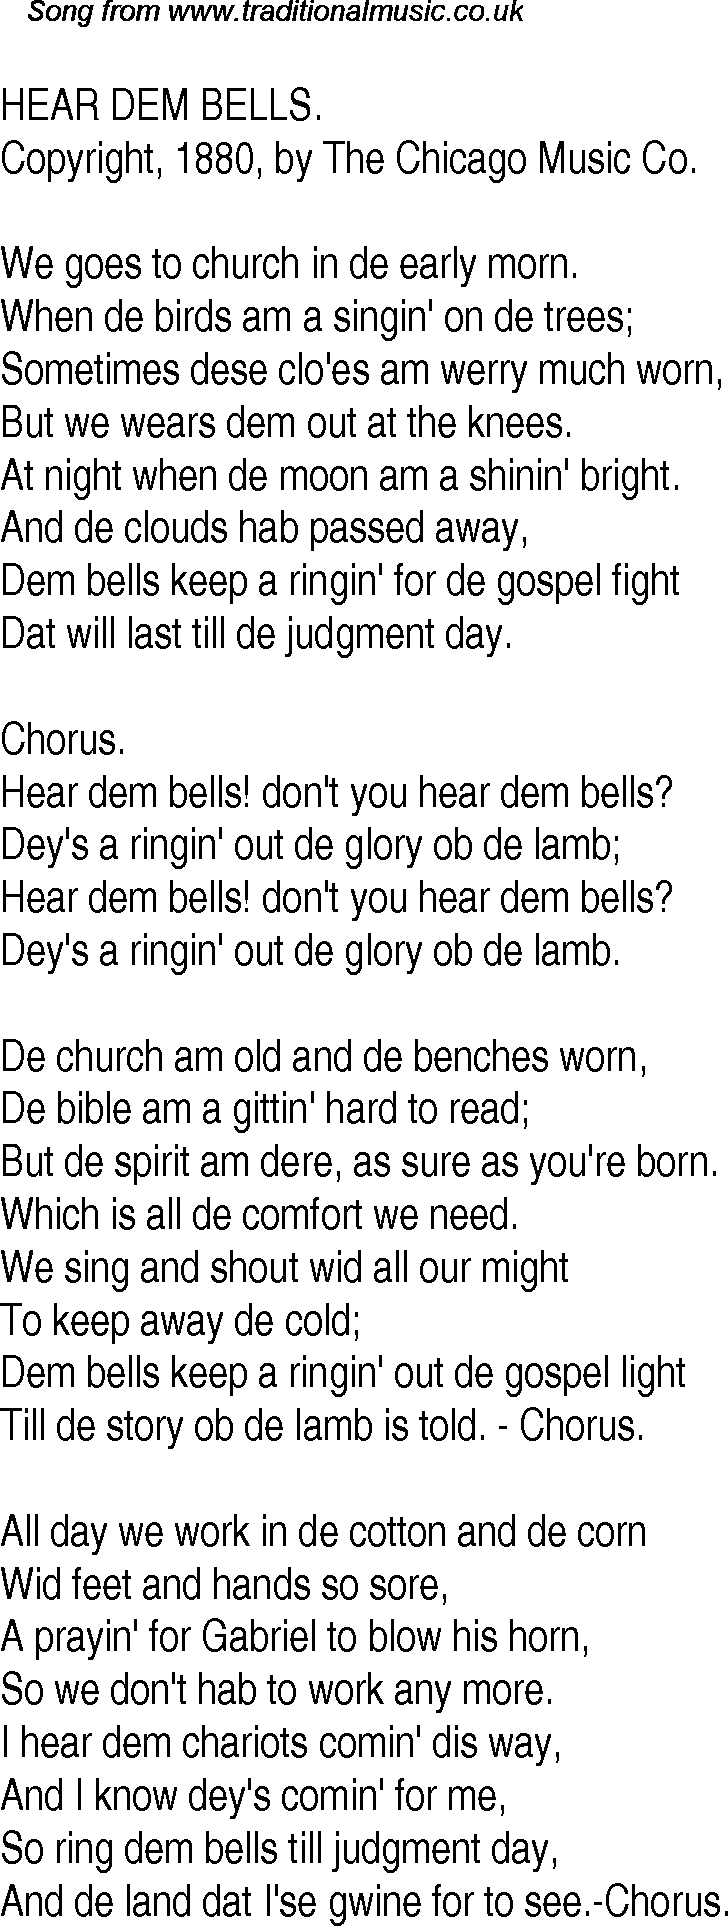 Old Time Song Lyrics for 20 Hear Dem Bells